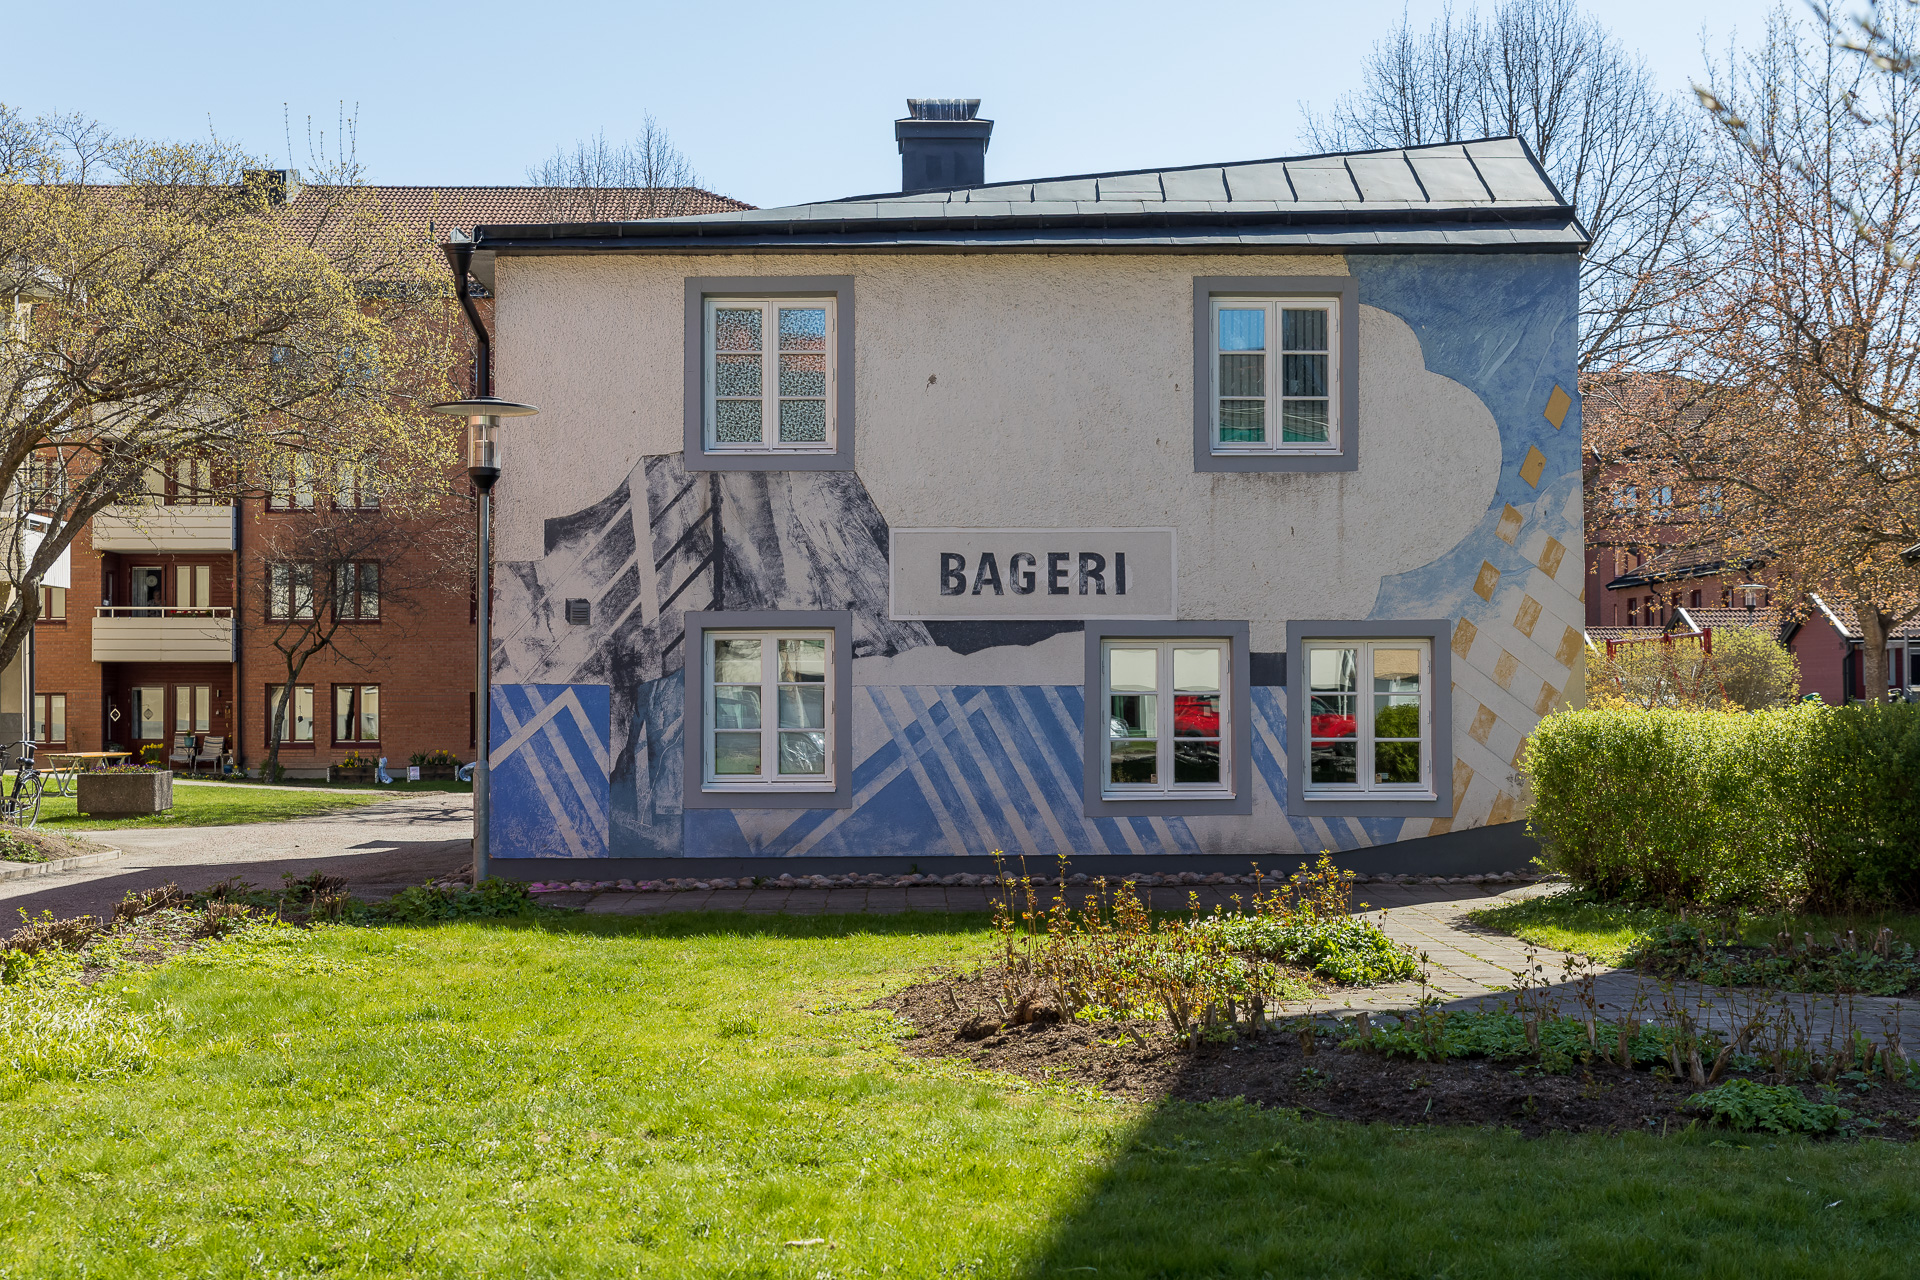 Byggnad med texten "Bageri" på fasaden.